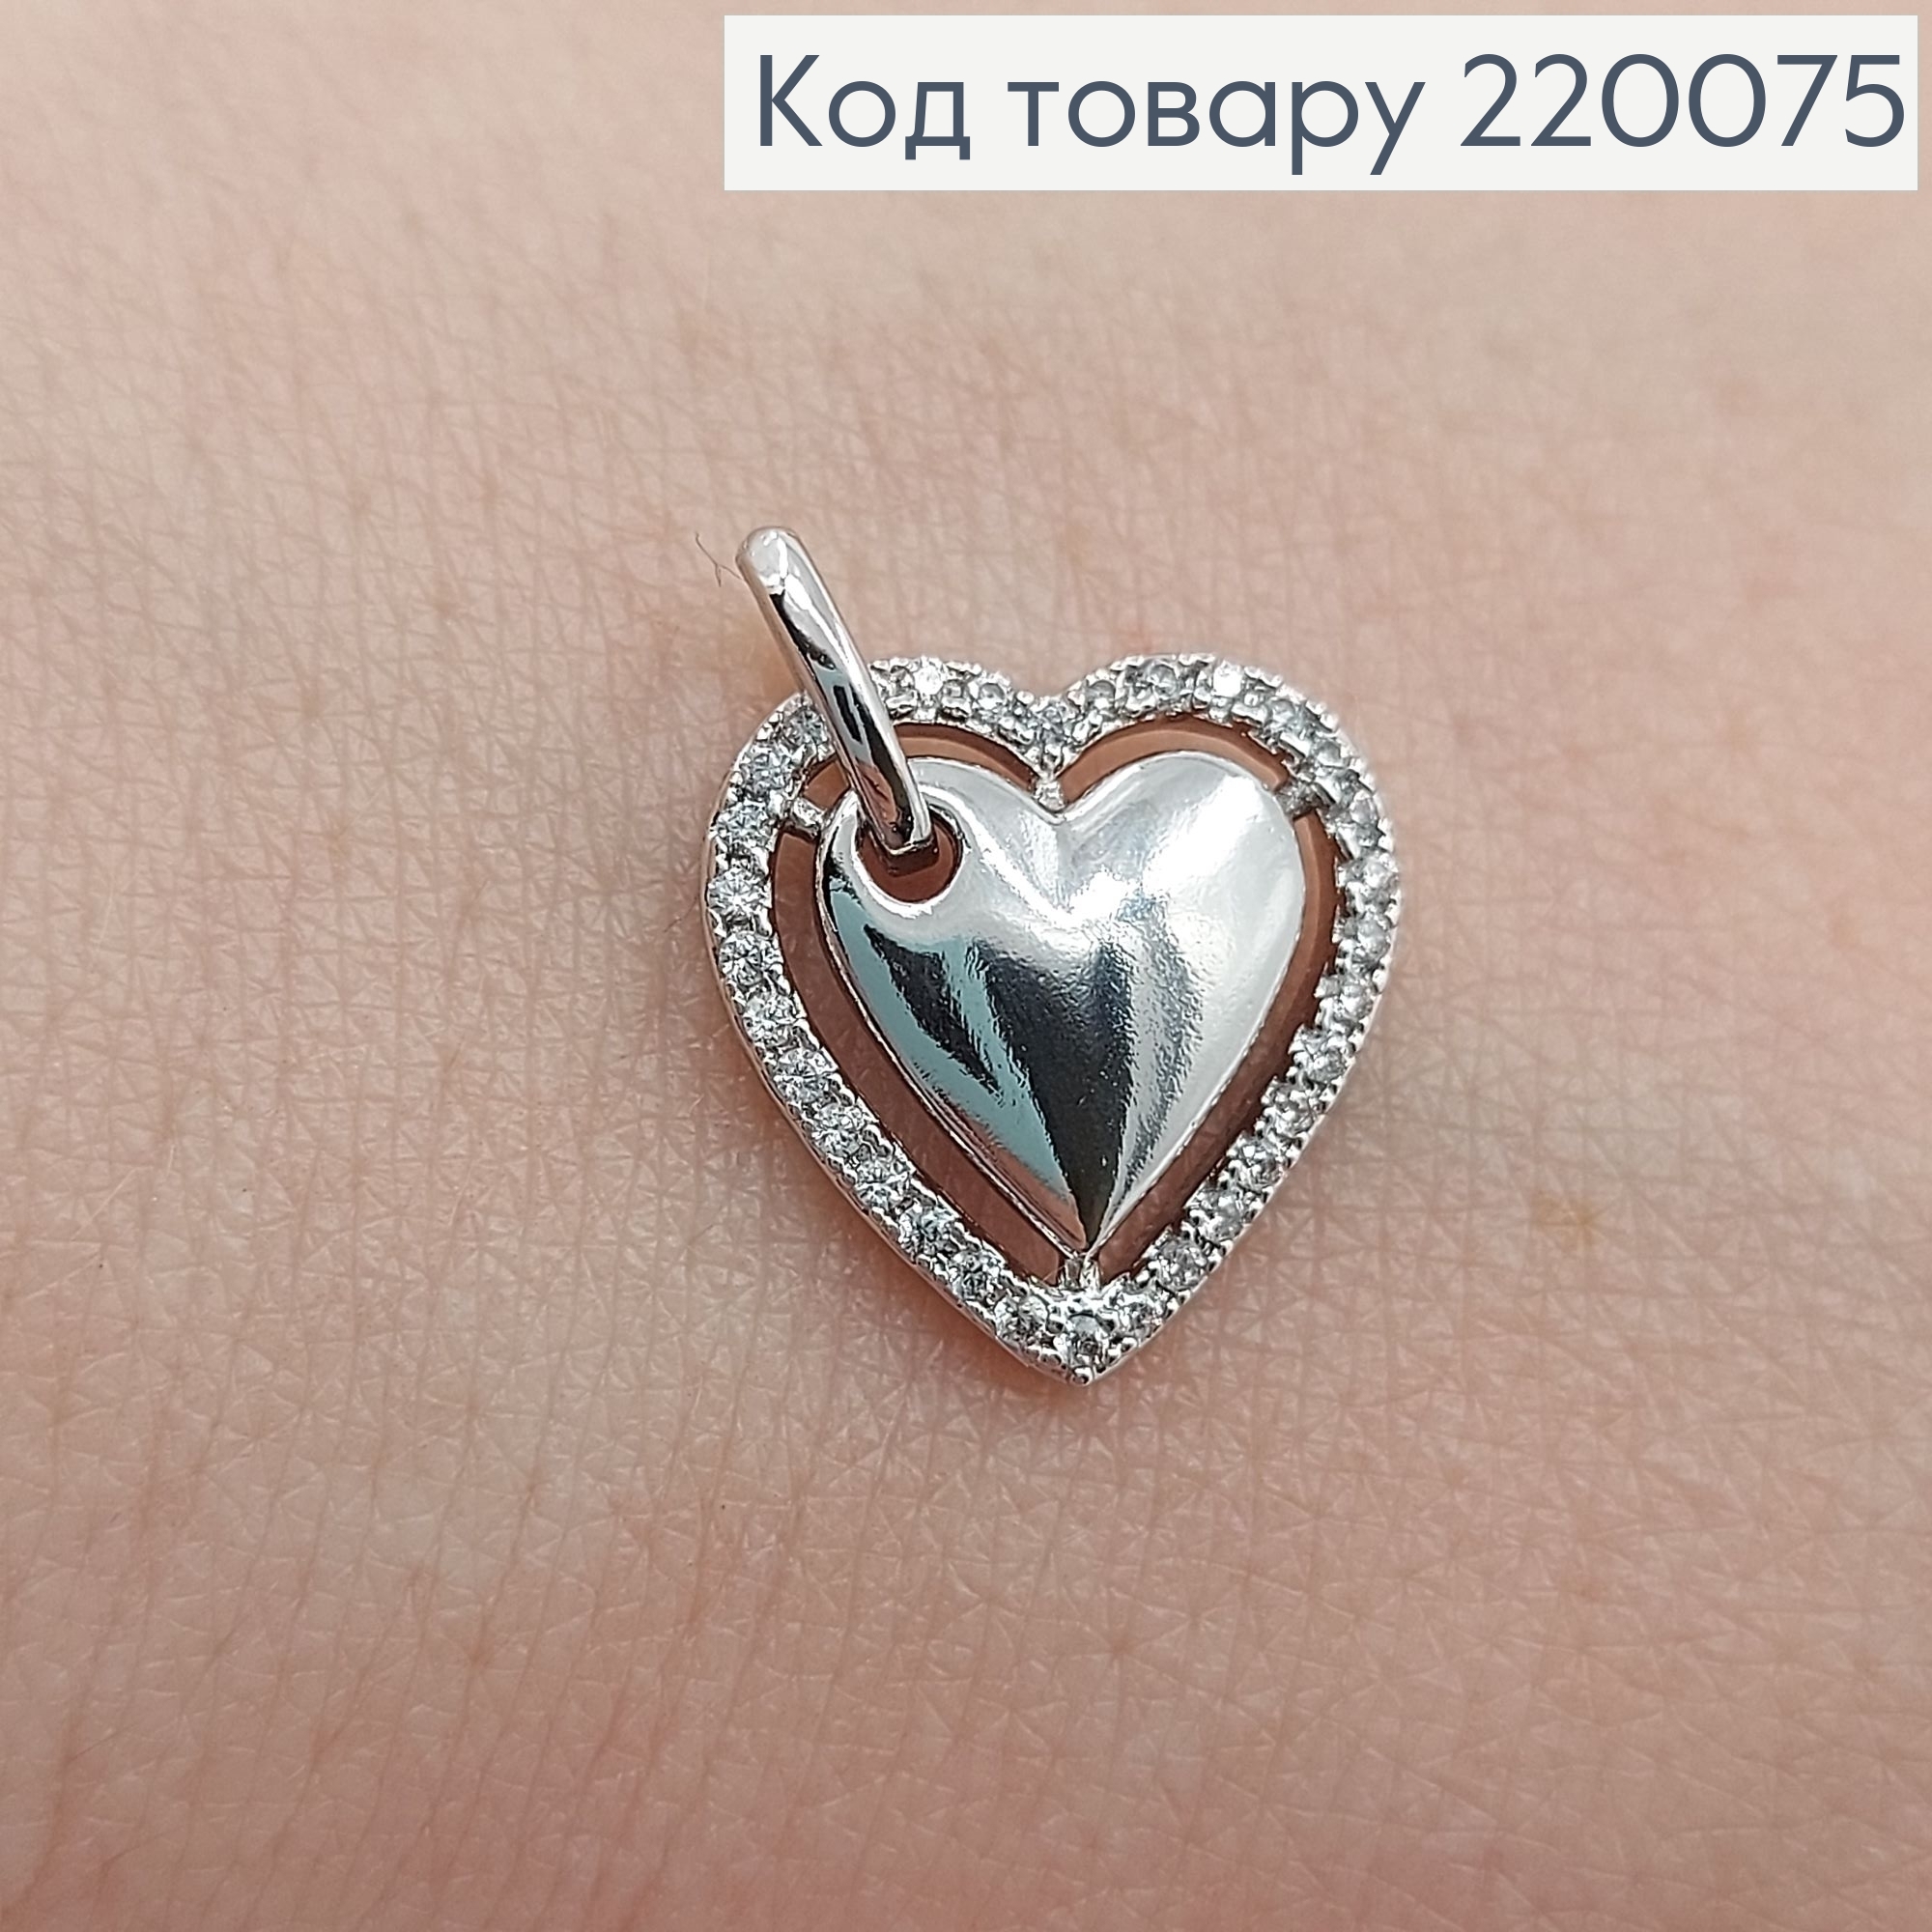 Кулон серце на сторону в камнях родированое   Xuping 18K 220075 фото 2